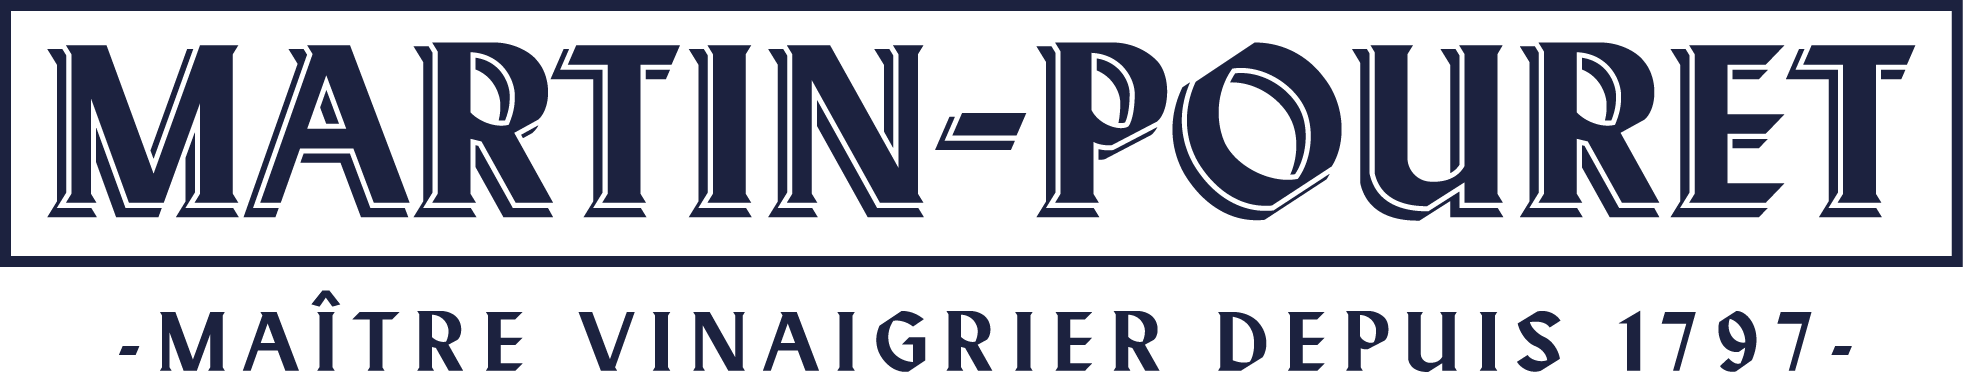 Martin Pouret Logo